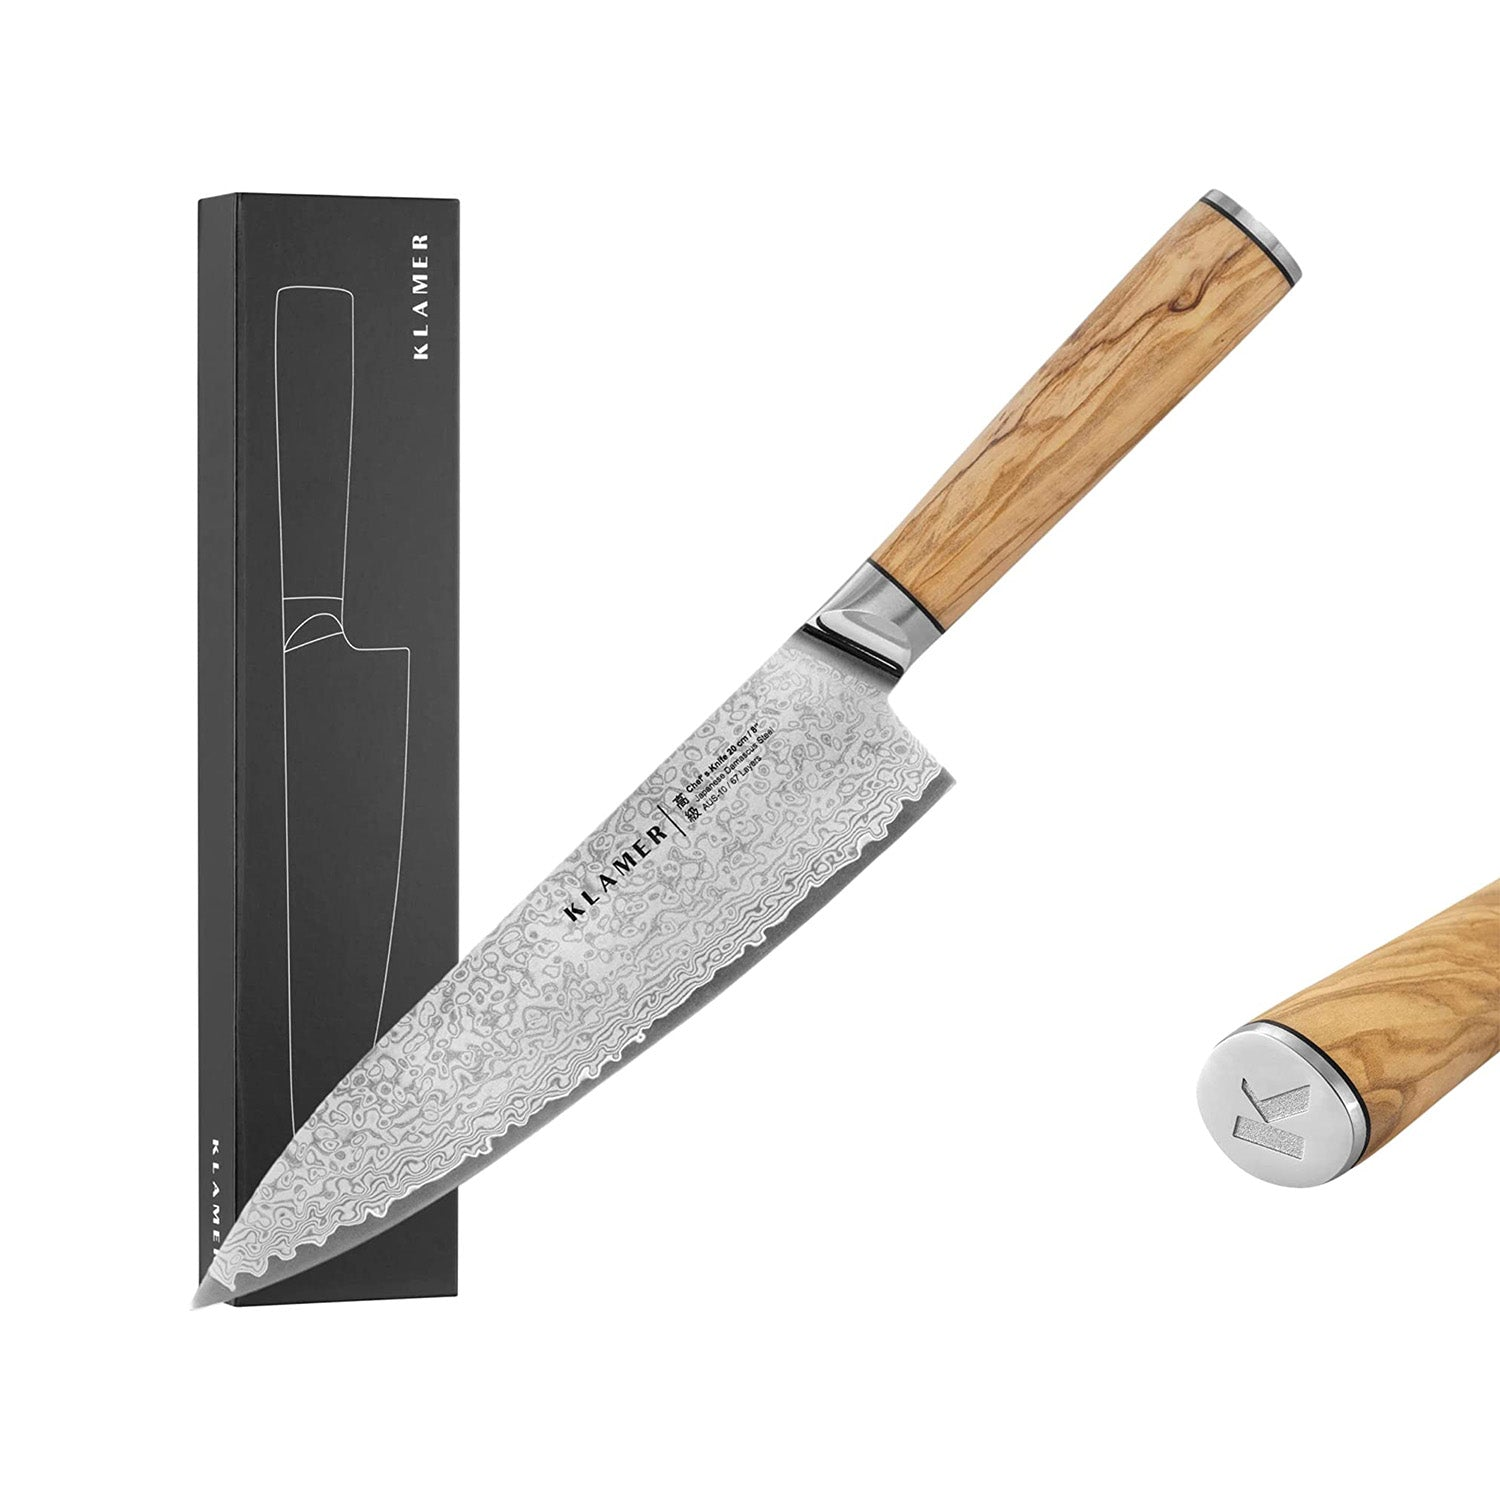 KLAMER Damast Chefmesser 20cm Olivenholz mit Messer